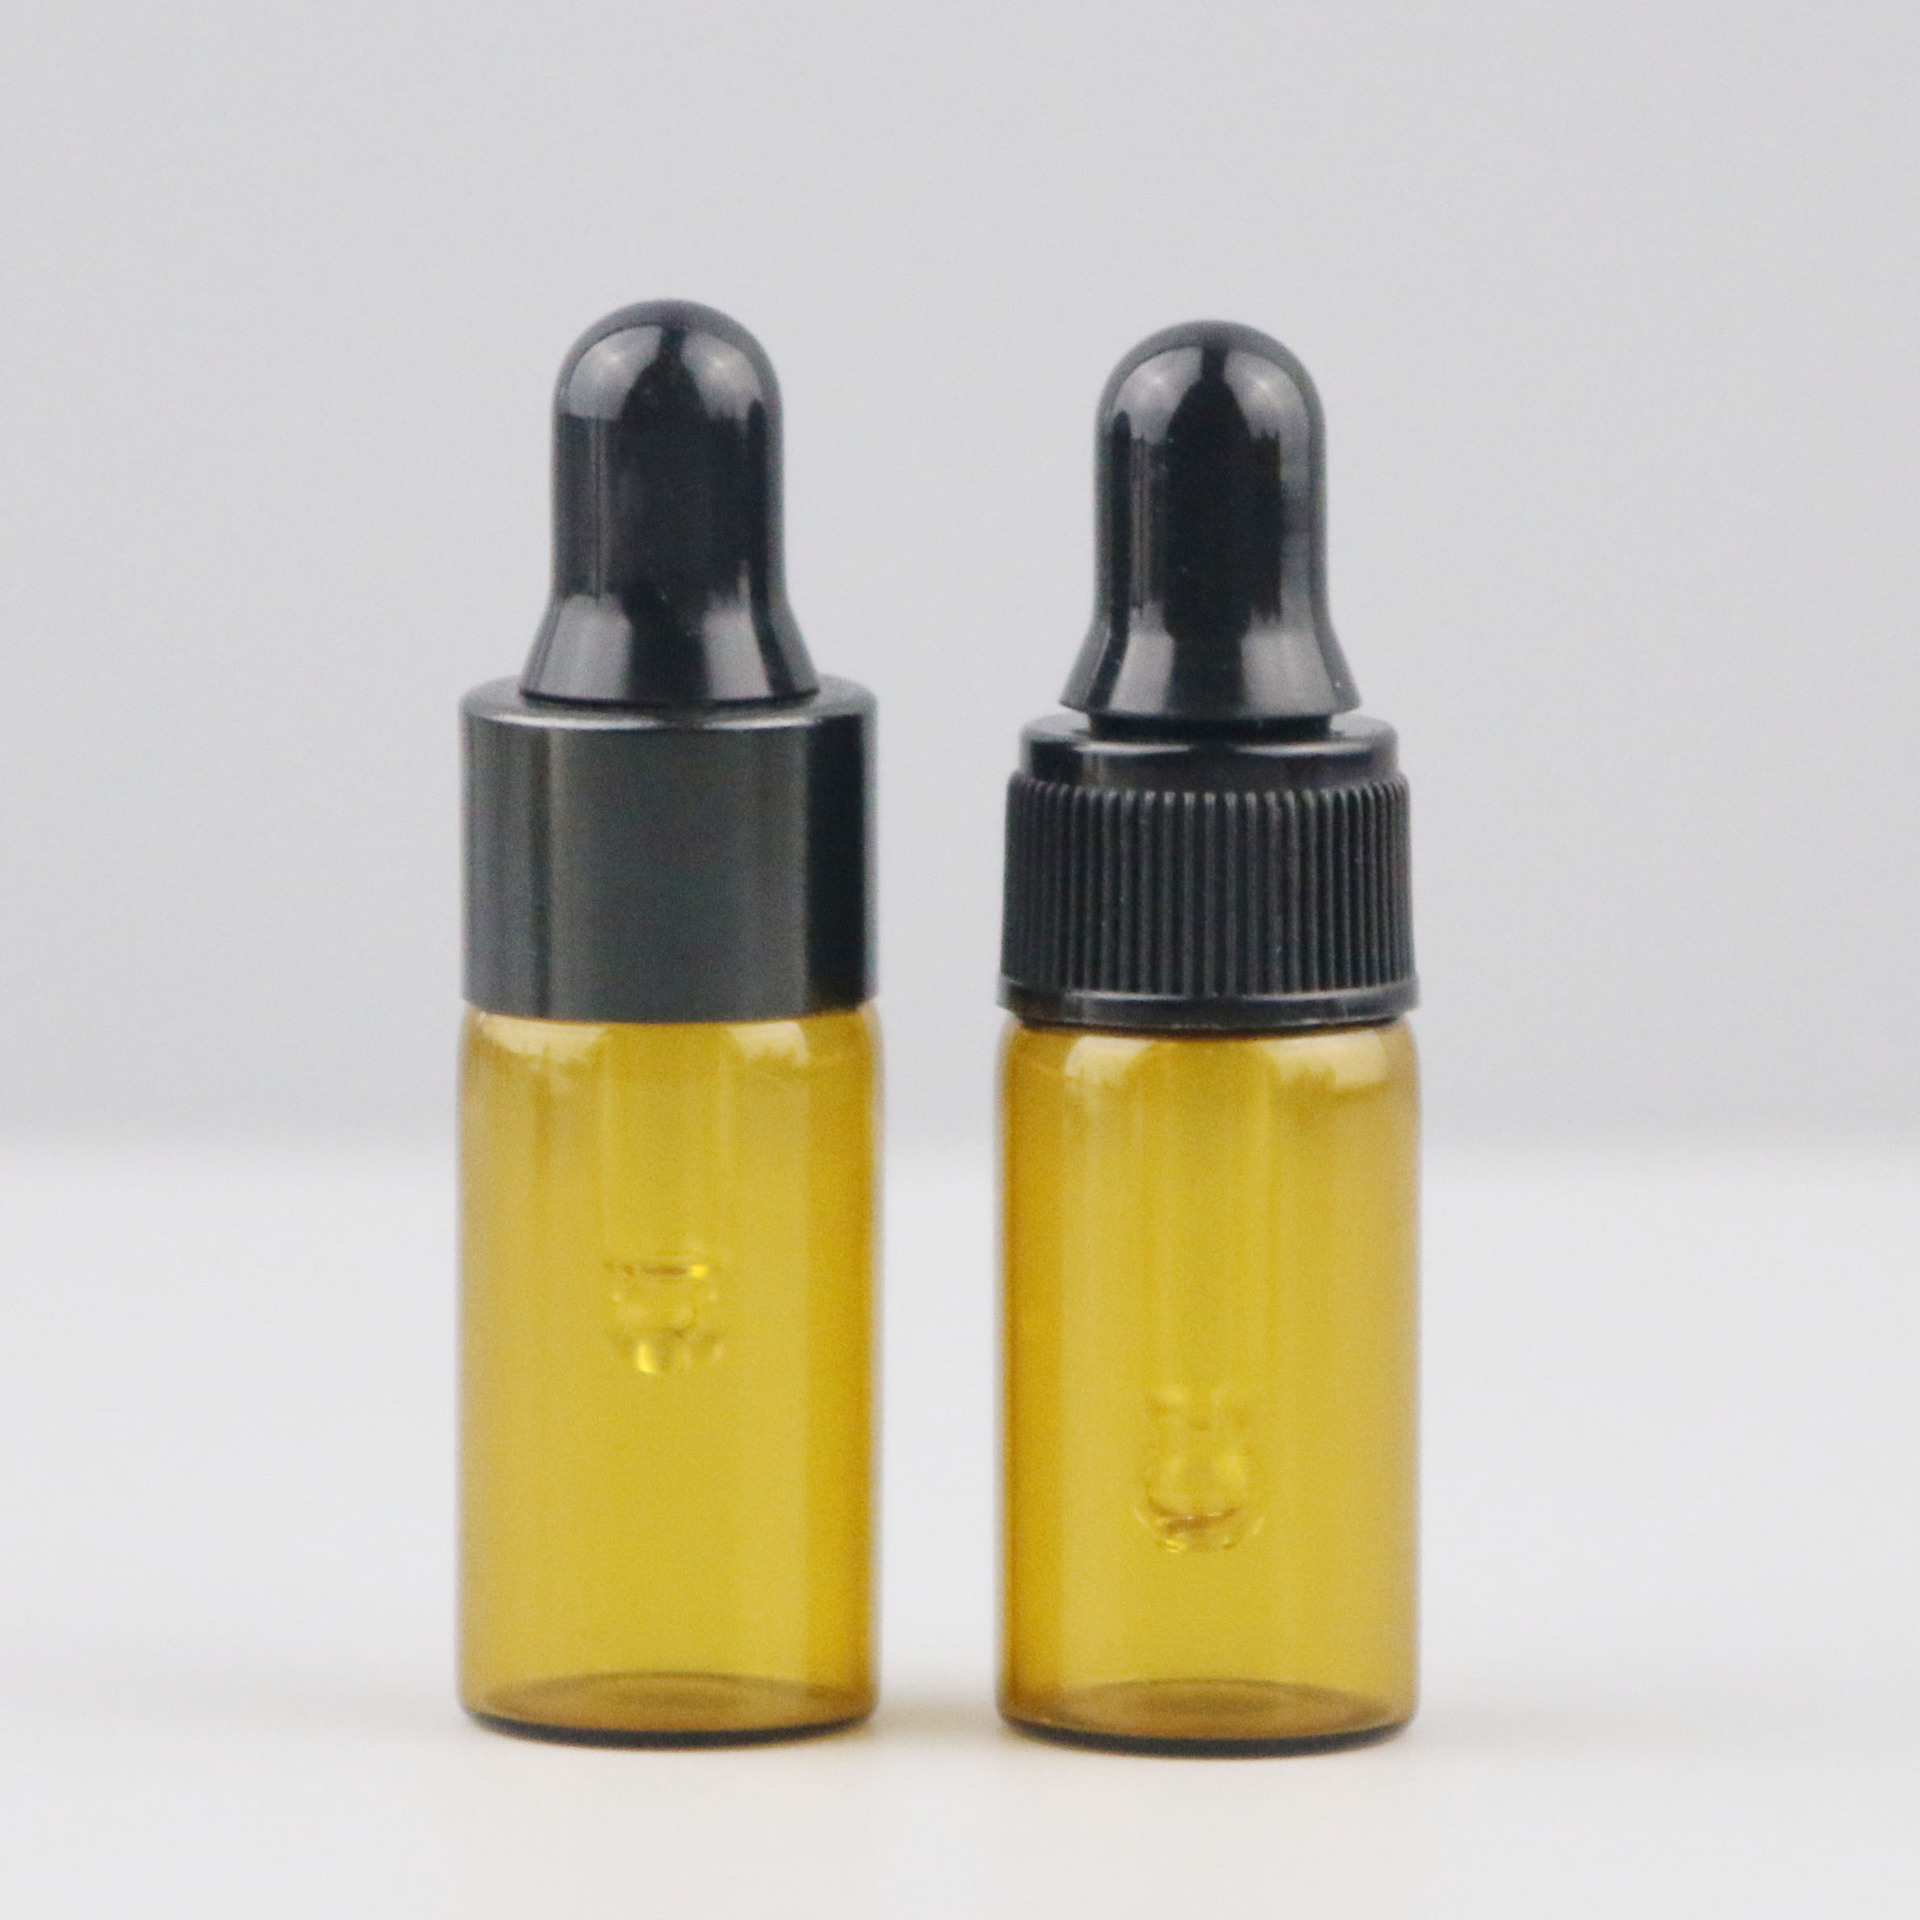 Spot brown oil bottle 1ml2ml glass dropper bottle sample bottling cosmetics trial